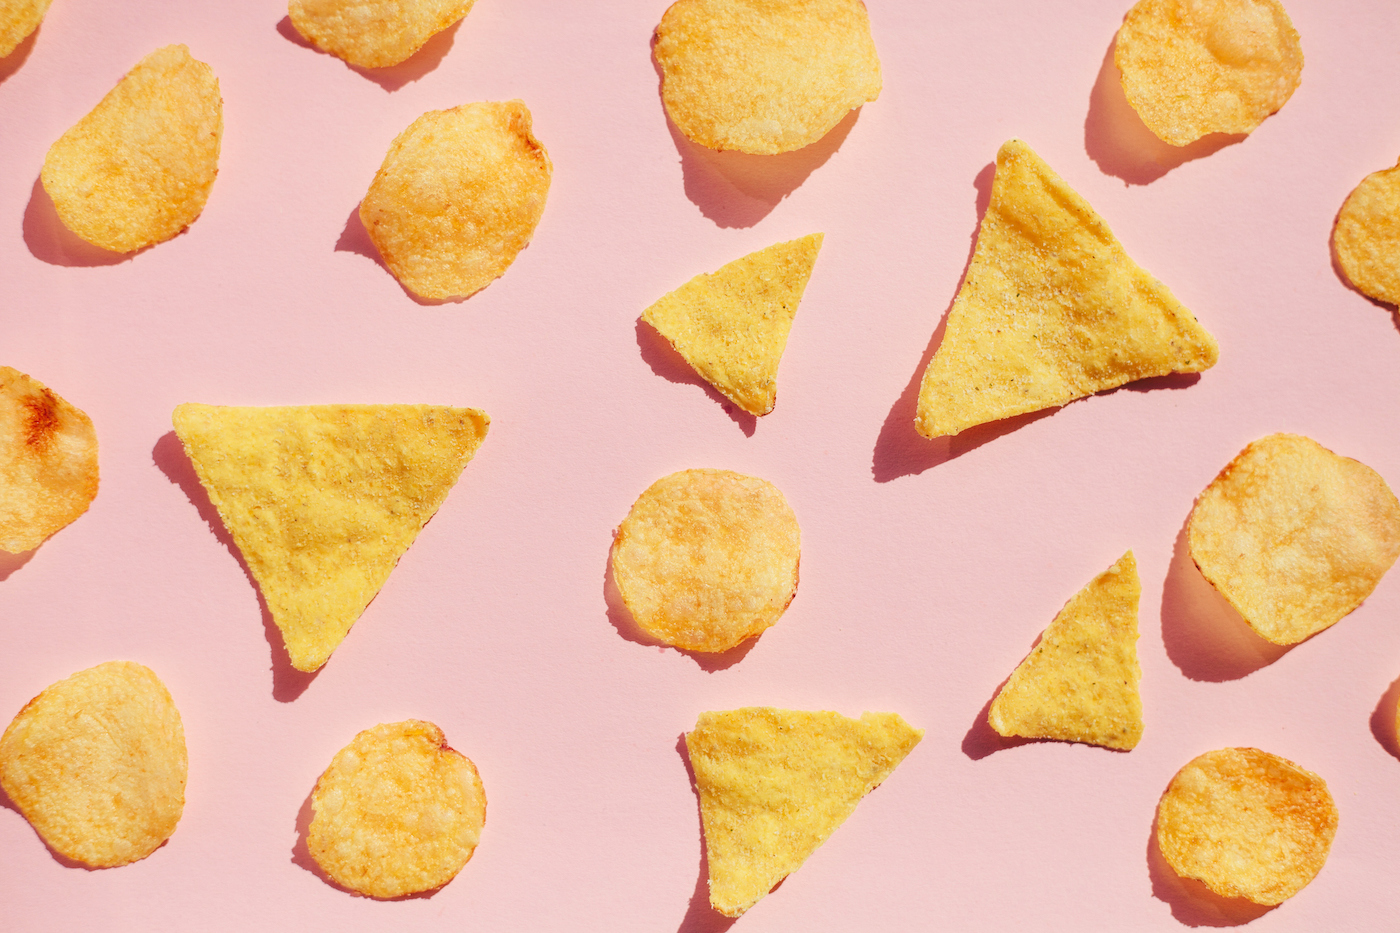 Padrão de batatas fritas sobre fundo rosa, luz dura com sombras.  Conceito de junk food insalubre.